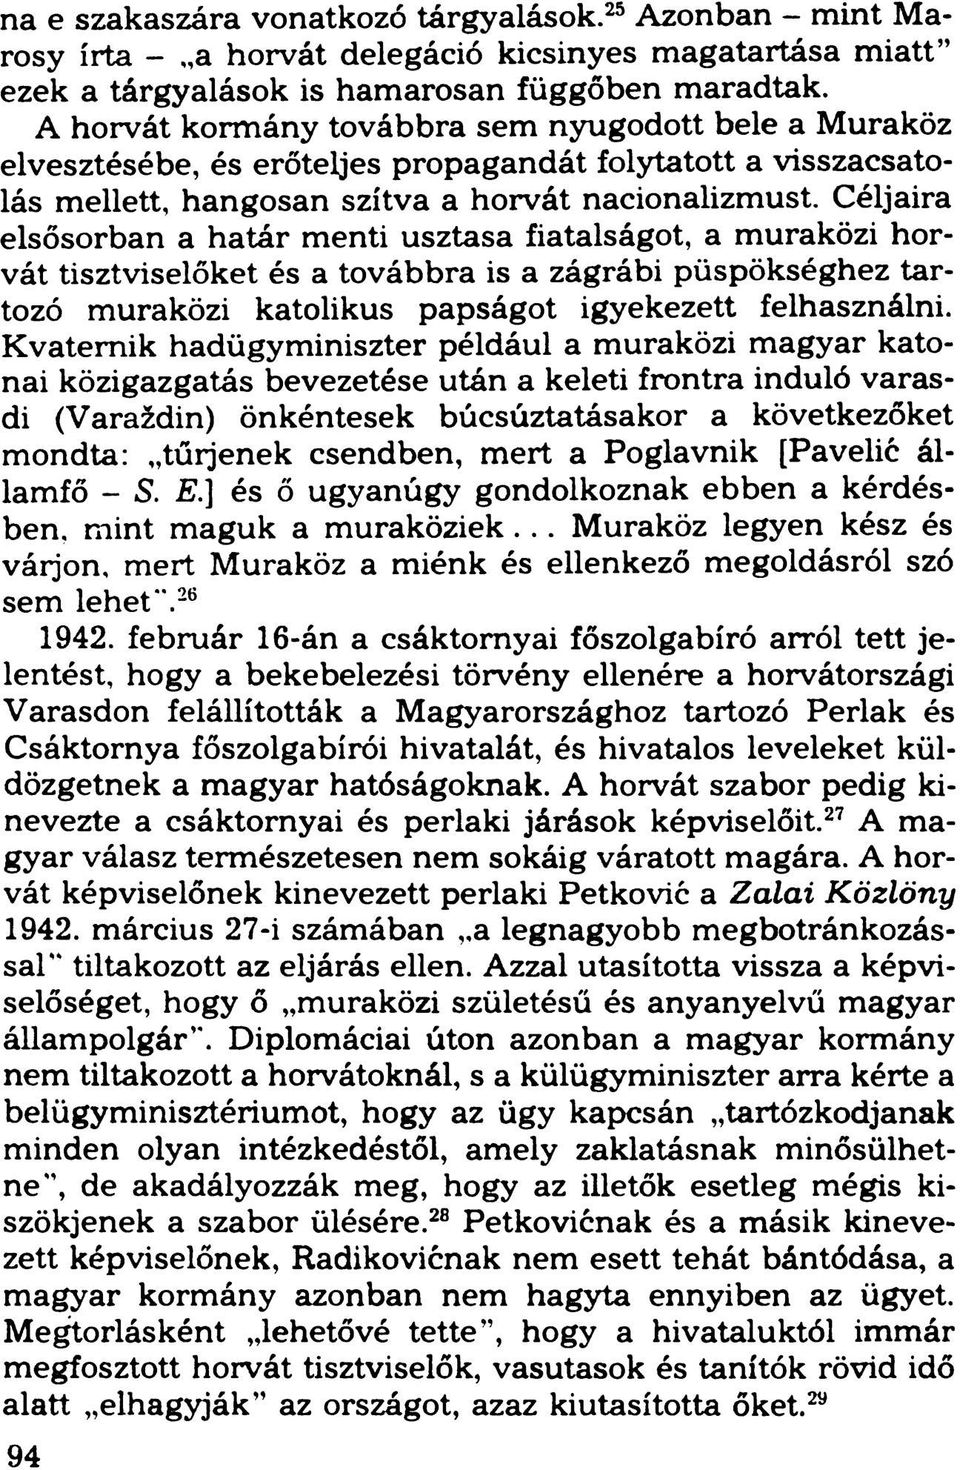 Céljaira elsősorban a határ menti usztasa fiatalságot, a muraközi horvát tisztviselőket és a továbbra is a zágrábi püspökséghez tartozó muraközi katolikus papságot igyekezett felhasználni.